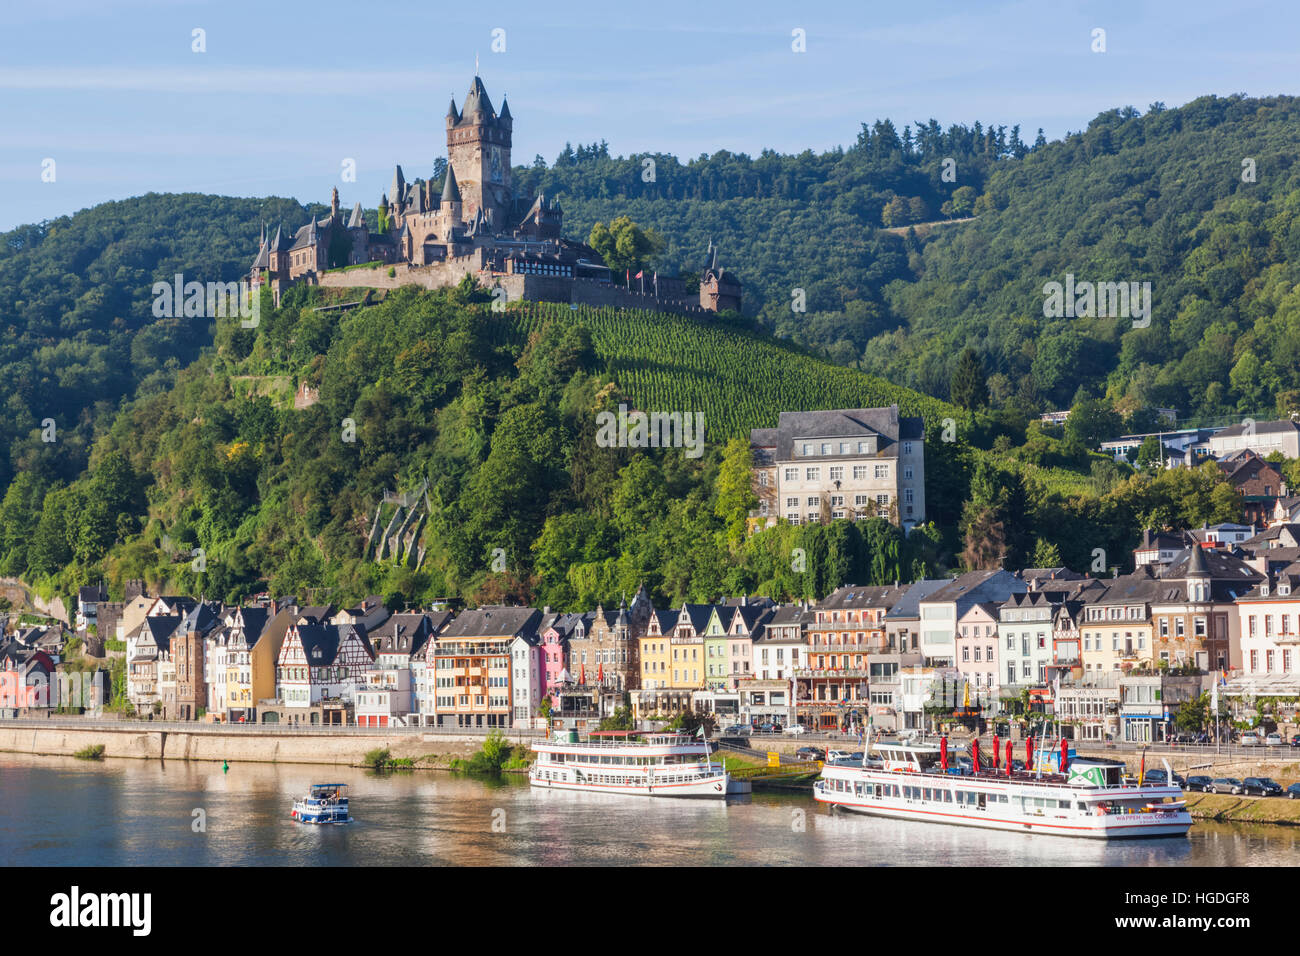 Germany, Rhineland-Palatinate, Moselle, Cochem Stock Photo